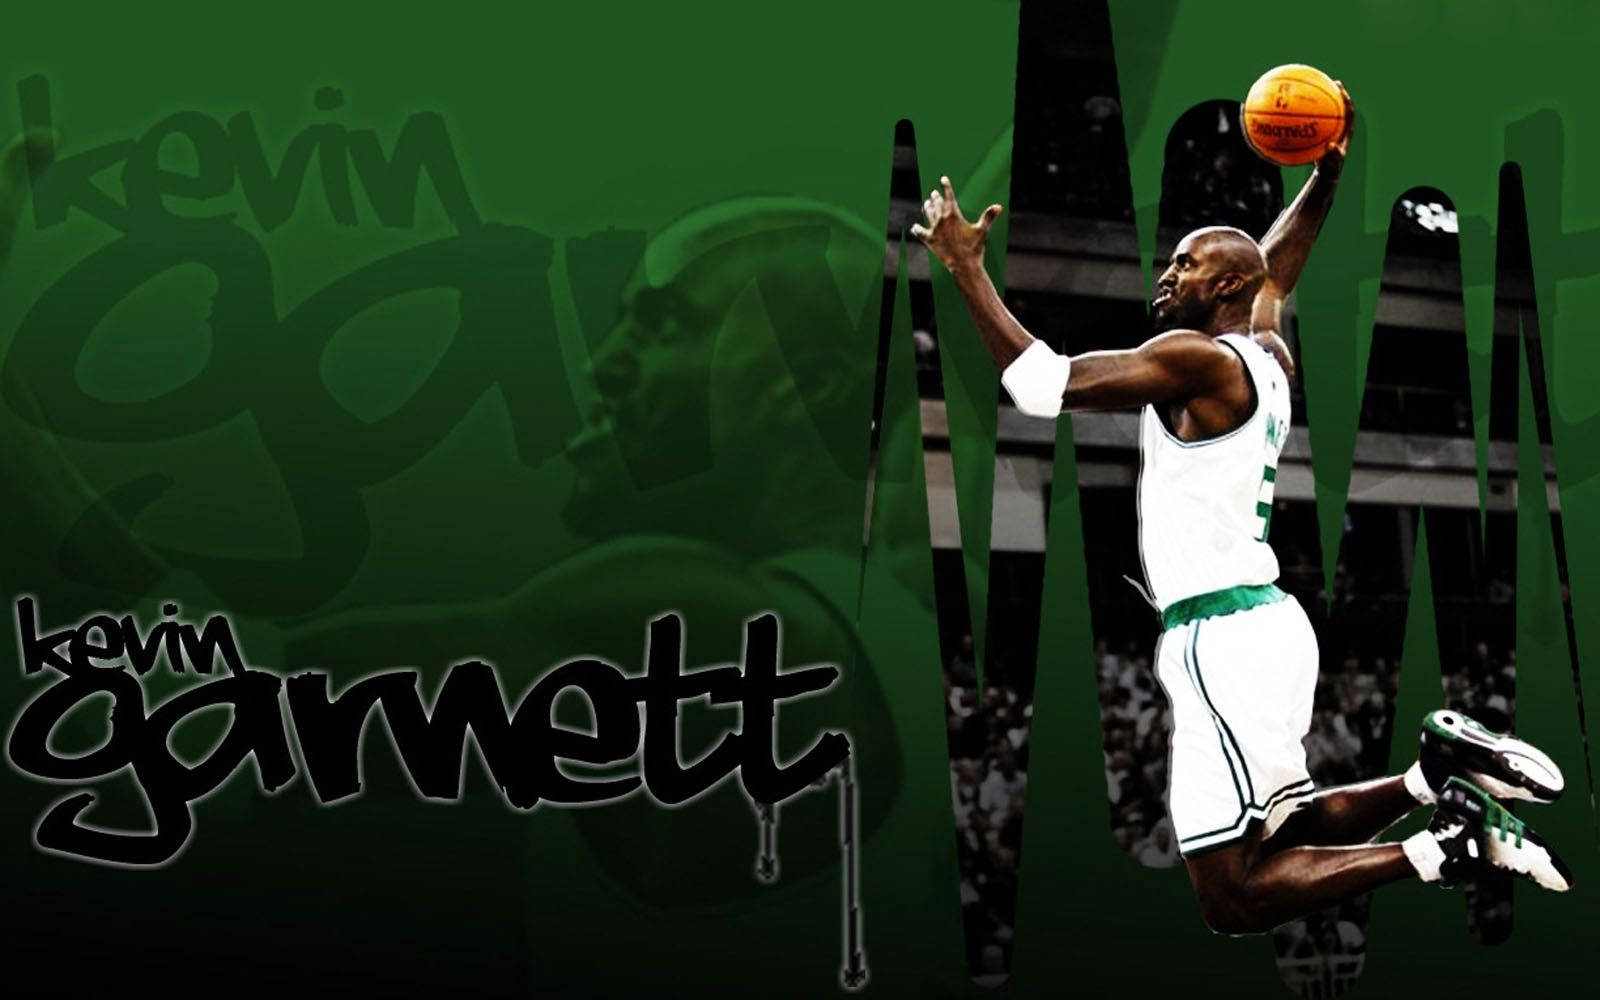 Skulpturelærred af NBA-stjernen Kevin Garnett Wallpaper